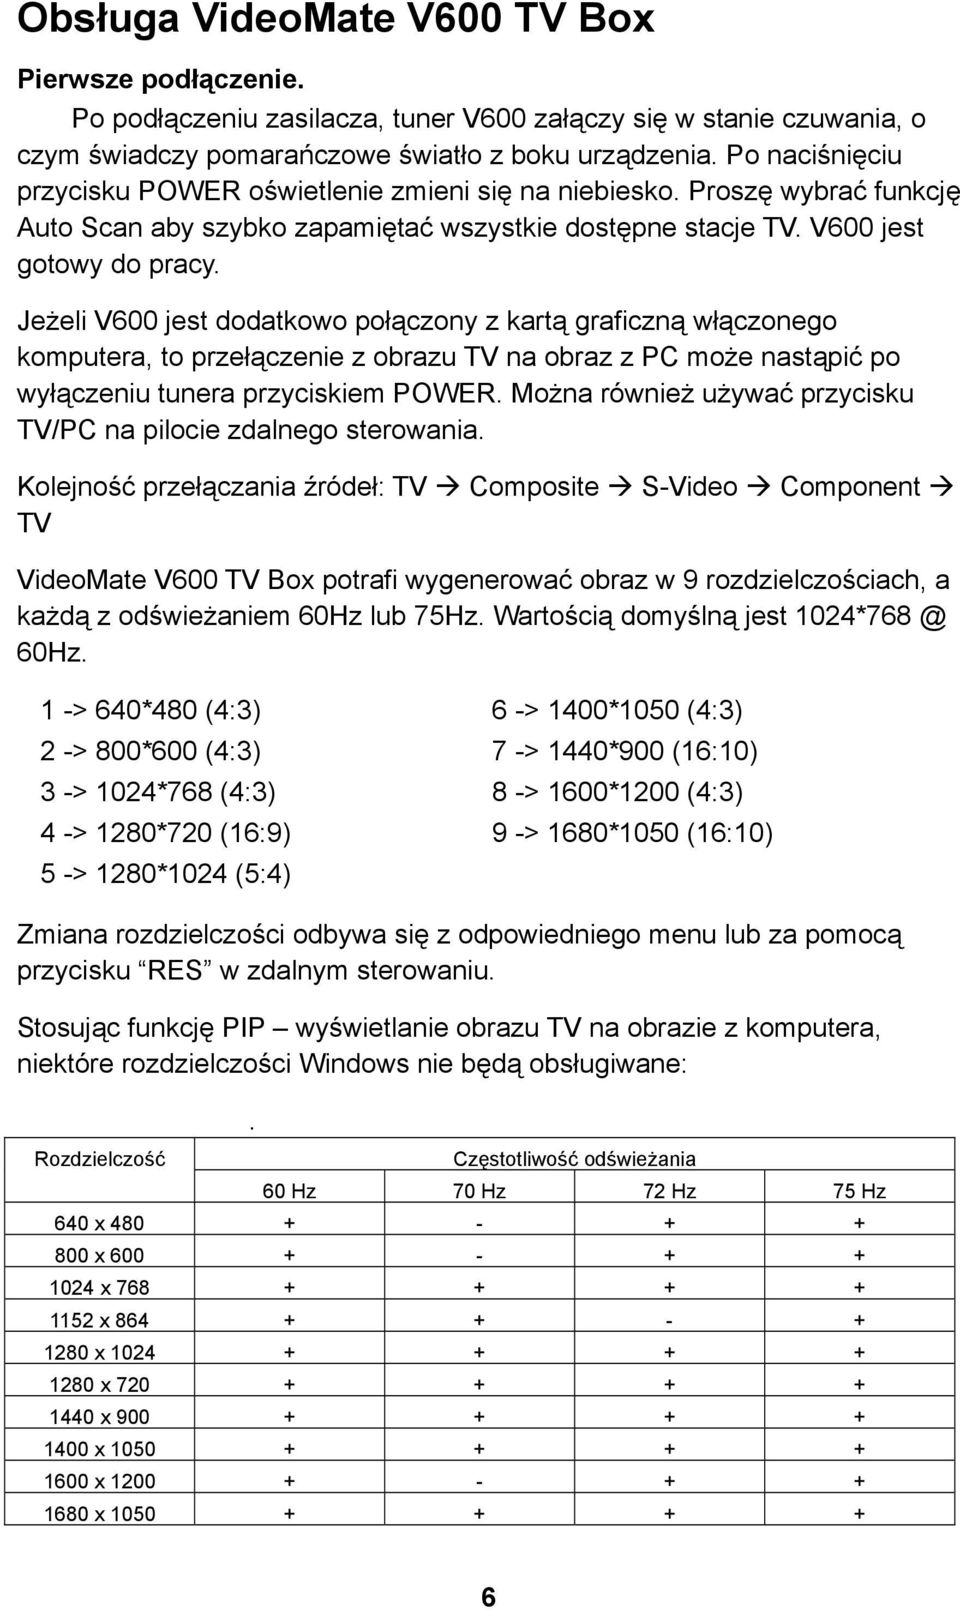 Jeżeli V600 jest dodatkowo połączony z kartą graficzną włączonego komputera, to przełączenie z obrazu TV na obraz z PC może nastąpić po wyłączeniu tunera przyciskiem POWER.